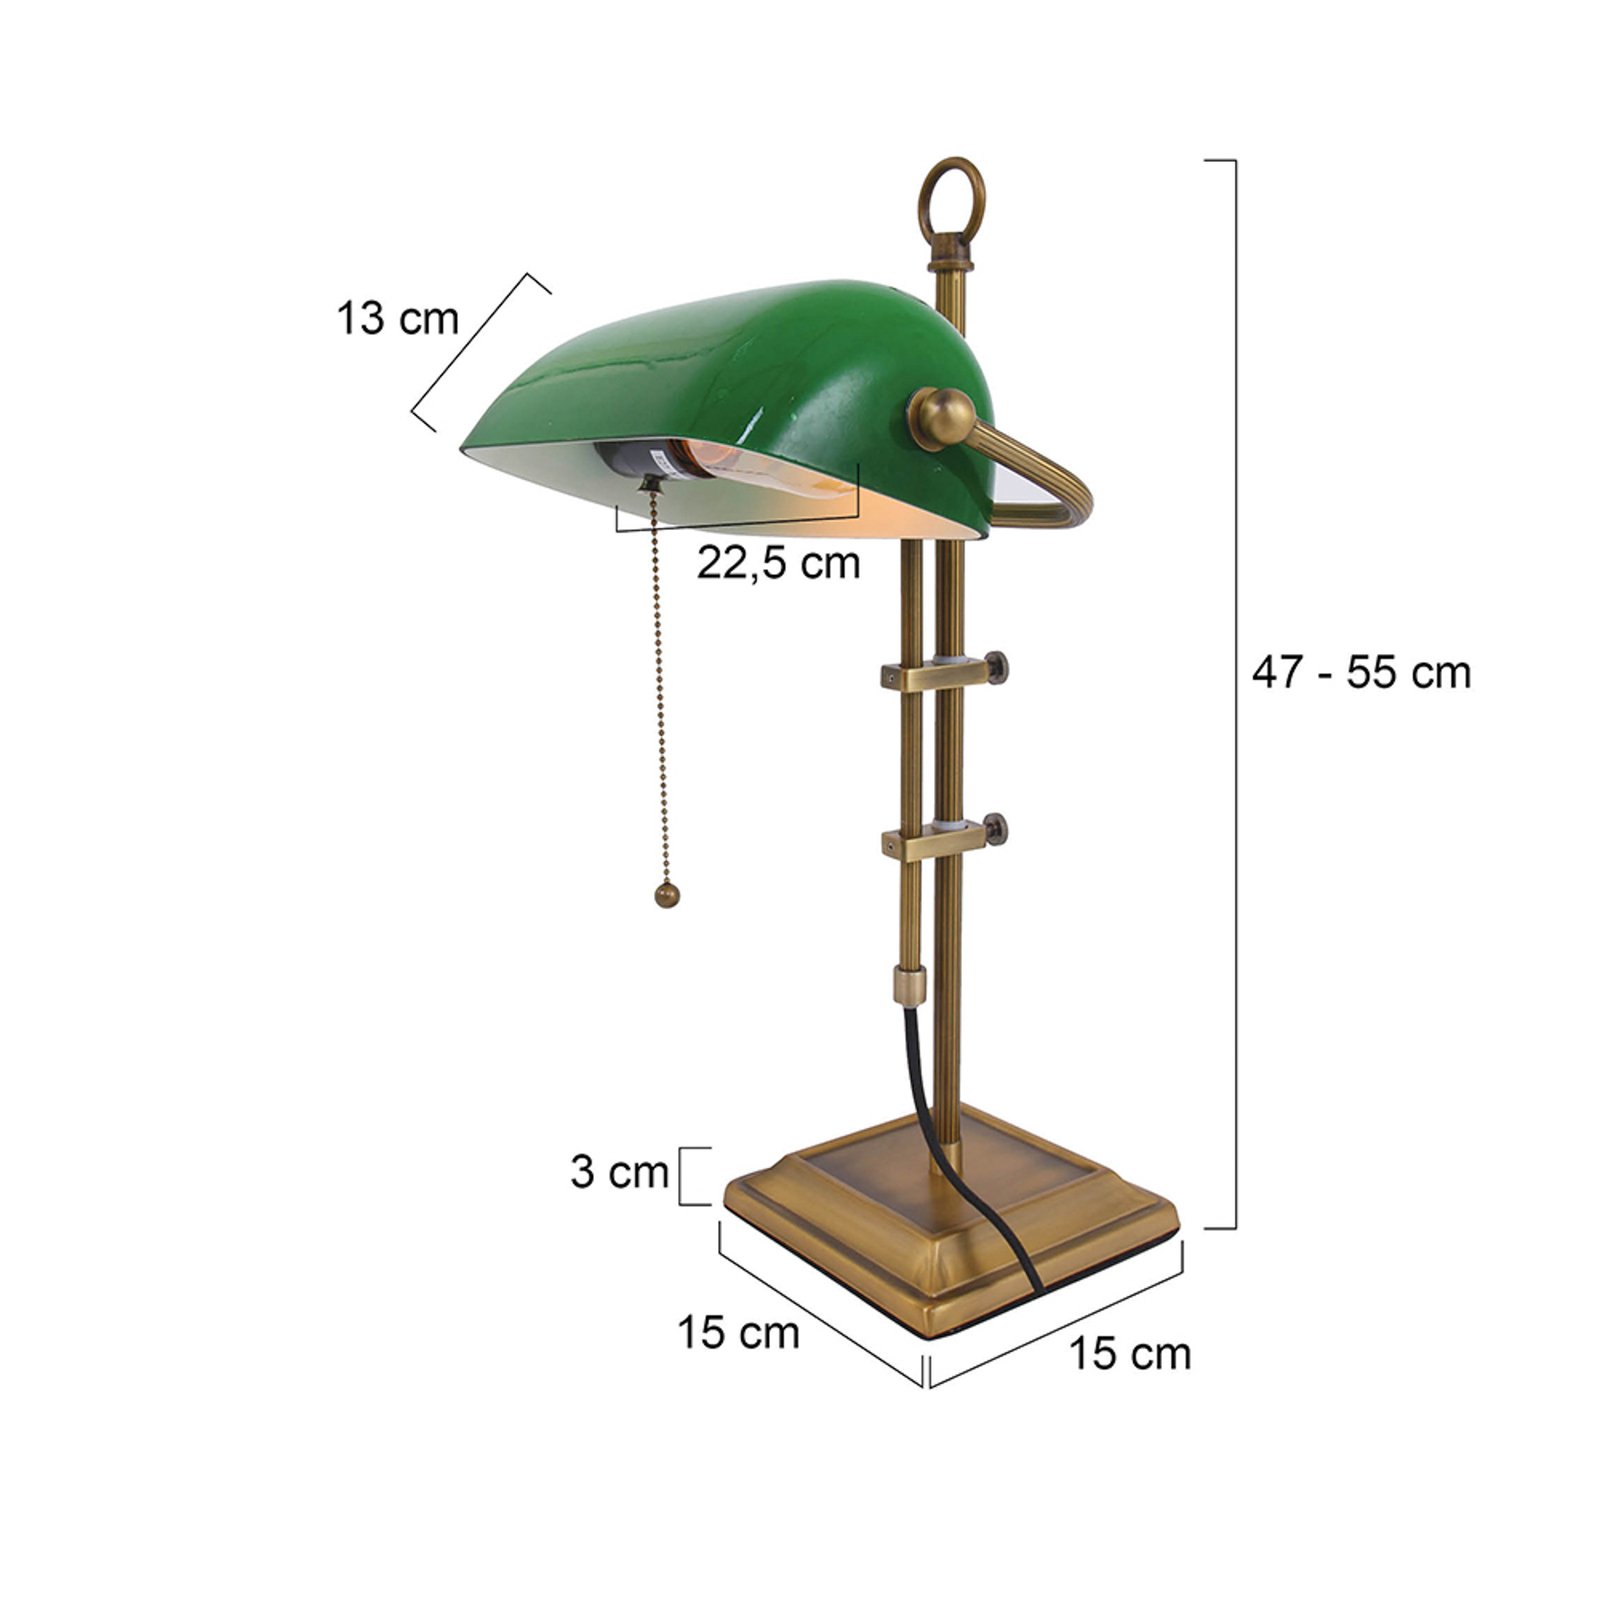 Ancilla lampada scrivania regolabile bronzo/verde